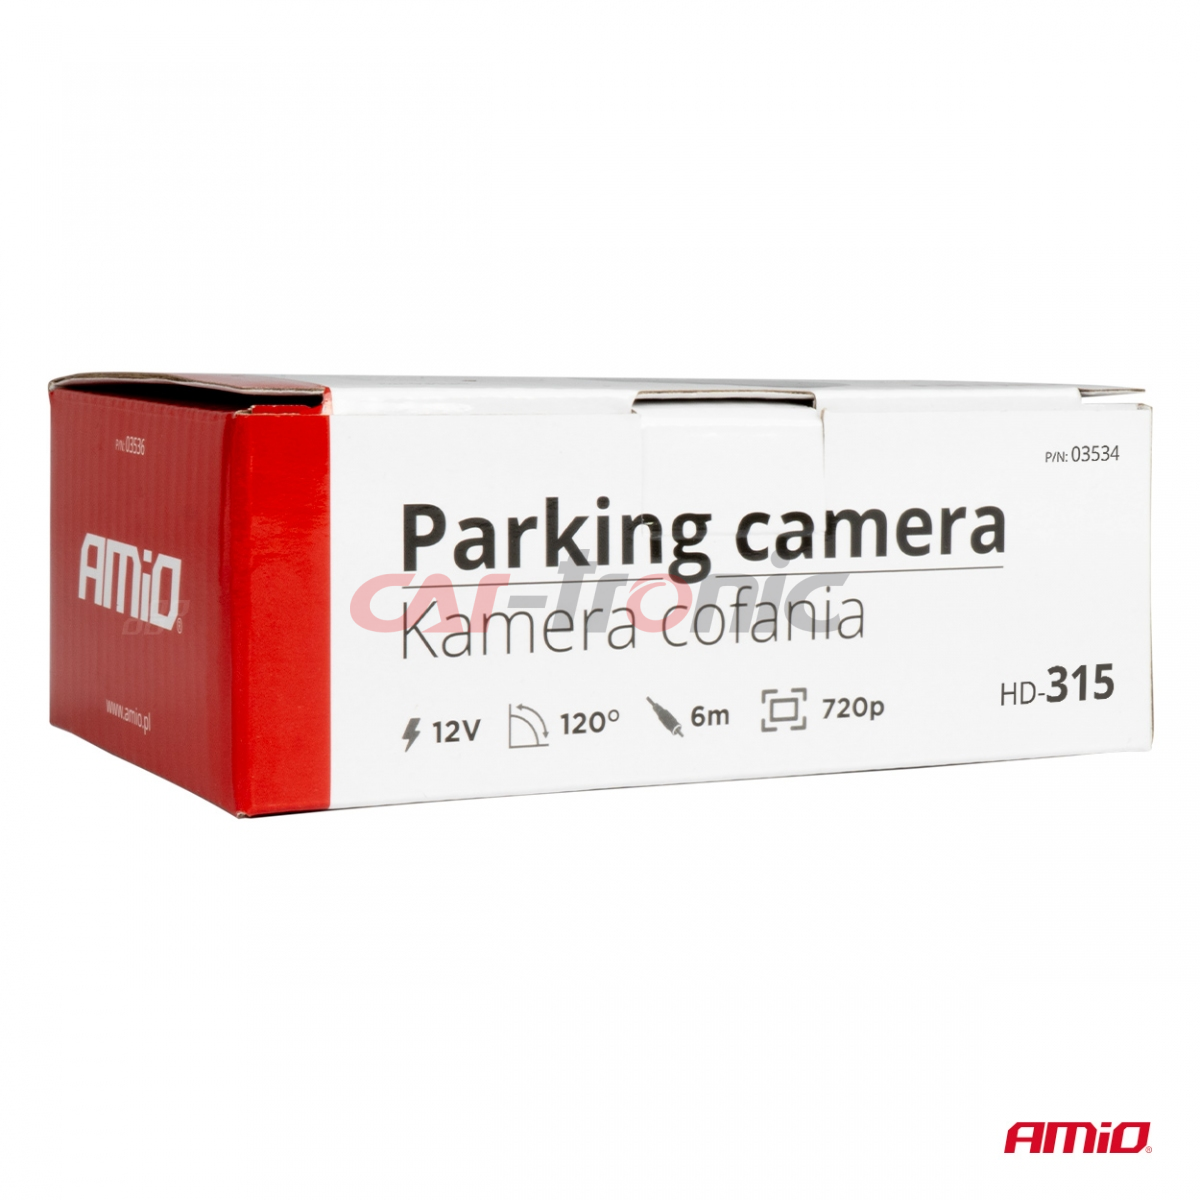 Kamera cofania parkowania HD-315 12v 720p AMIO-03534